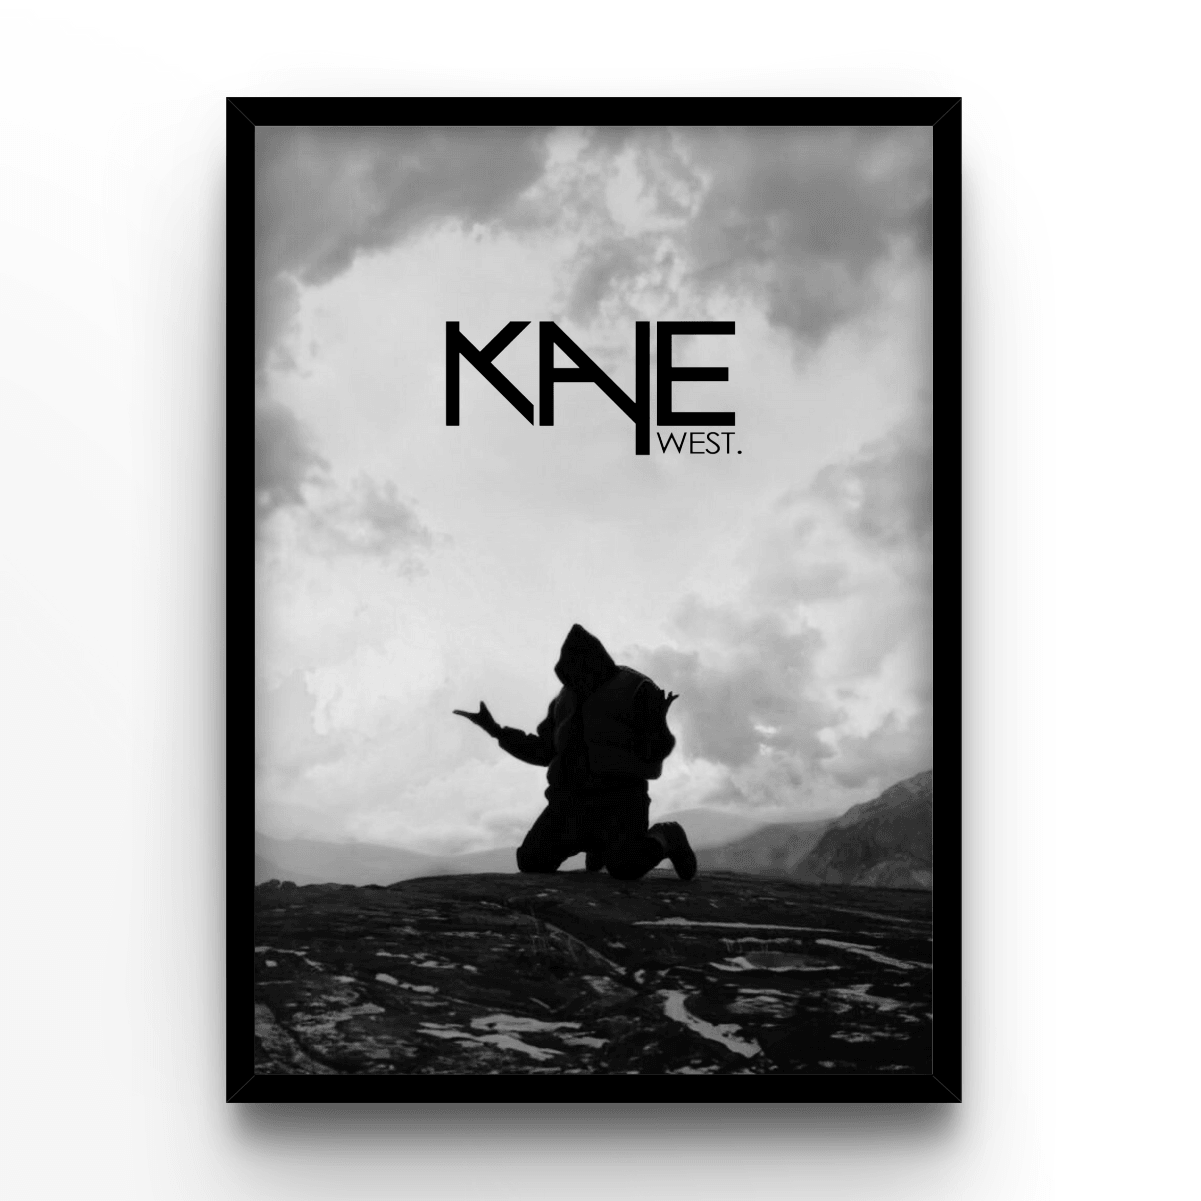 Kanye West - A4, A3, A2 Posters Base - Poster Print Shop / Art Prints / PostersBase